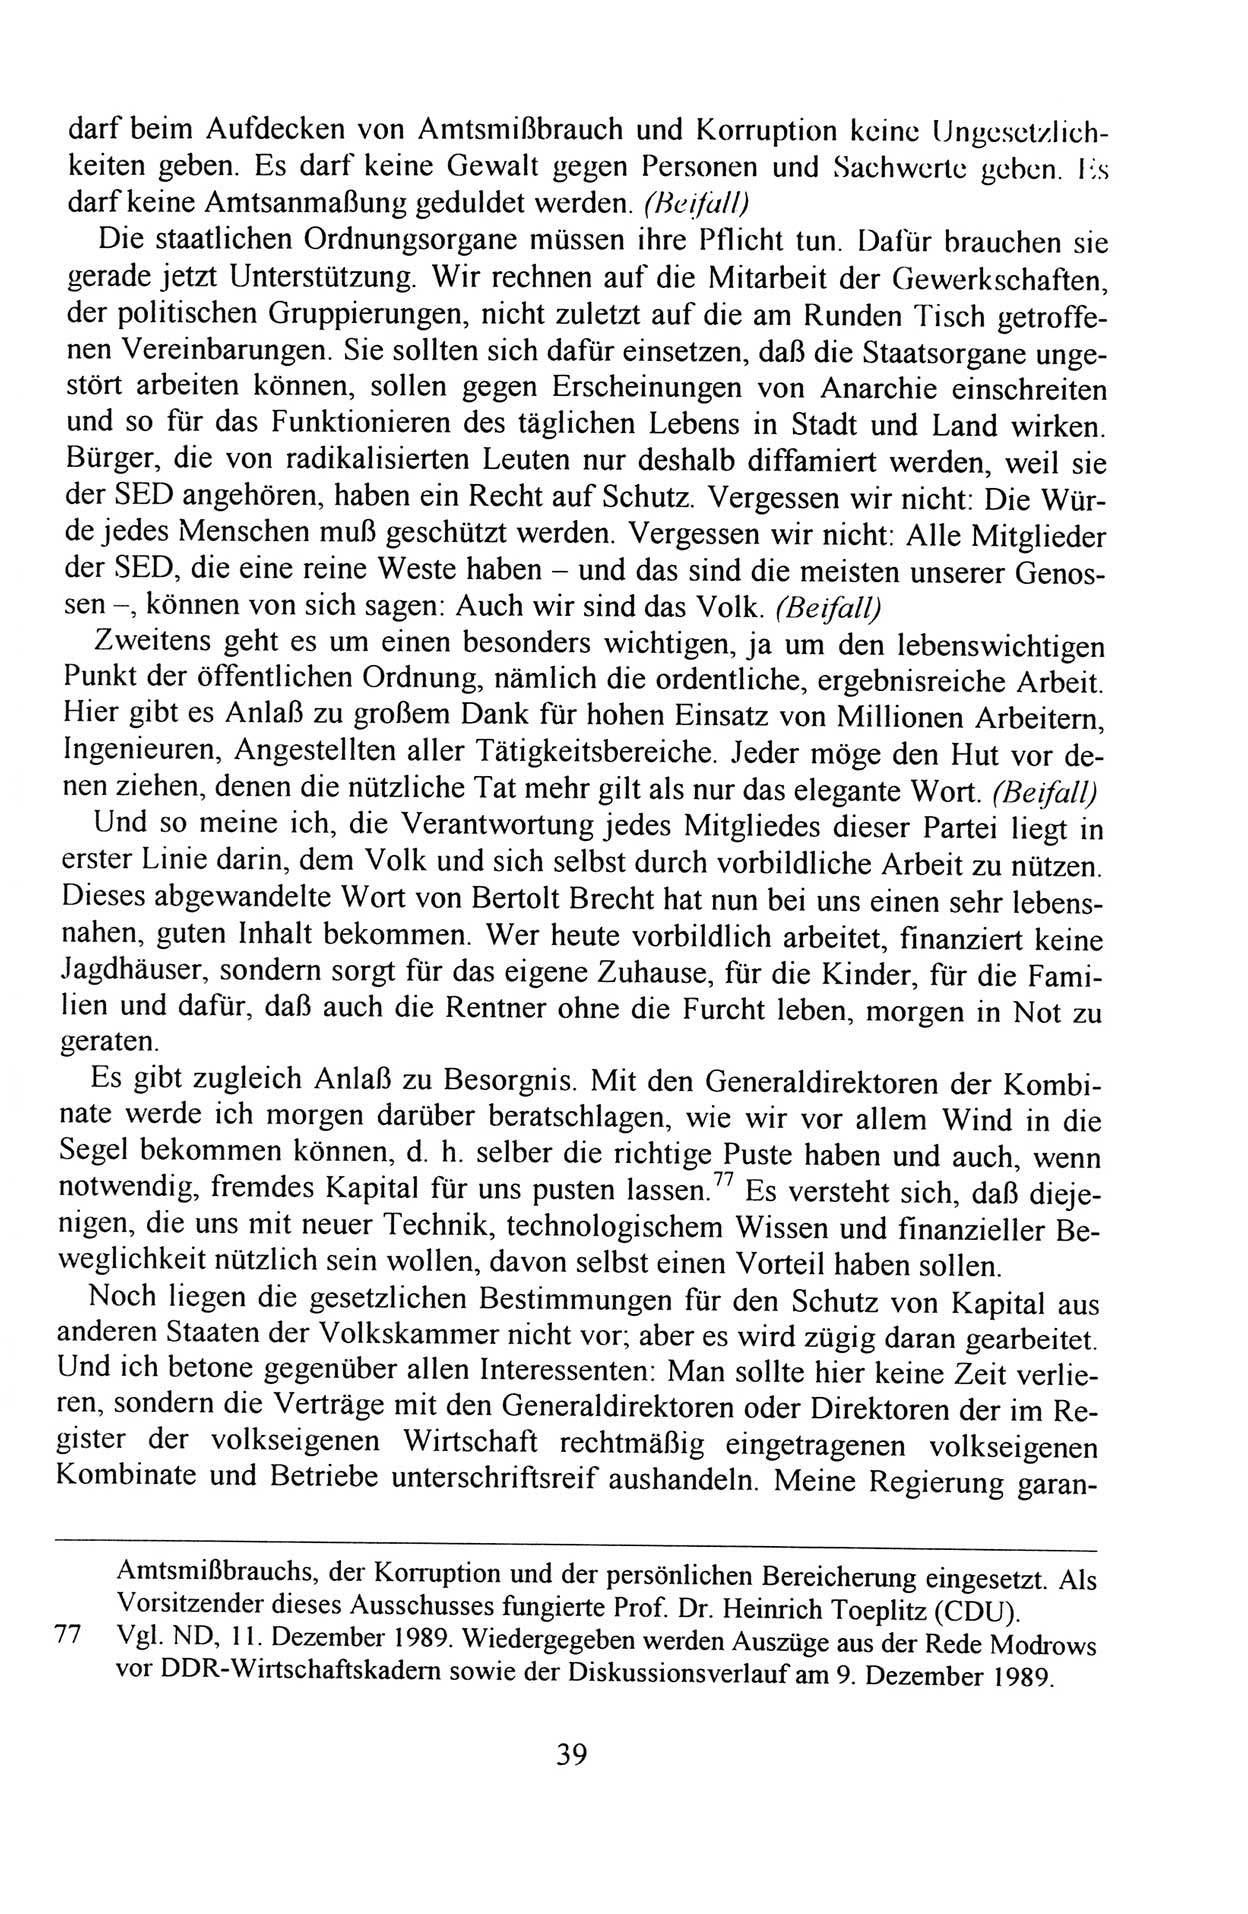 Außerordentlicher Parteitag der SED/PDS (Sozialistische Einheitspartei Deutschlands/Partei des Demokratischen Sozialismus) [Deutsche Demokratische Republik (DDR)], Protokoll der Beratungen am 8./9. und 16./17.12.1989 in Berlin 1989, Seite 39 (PT. SED/PDS DDR Prot. 1989, S. 39)